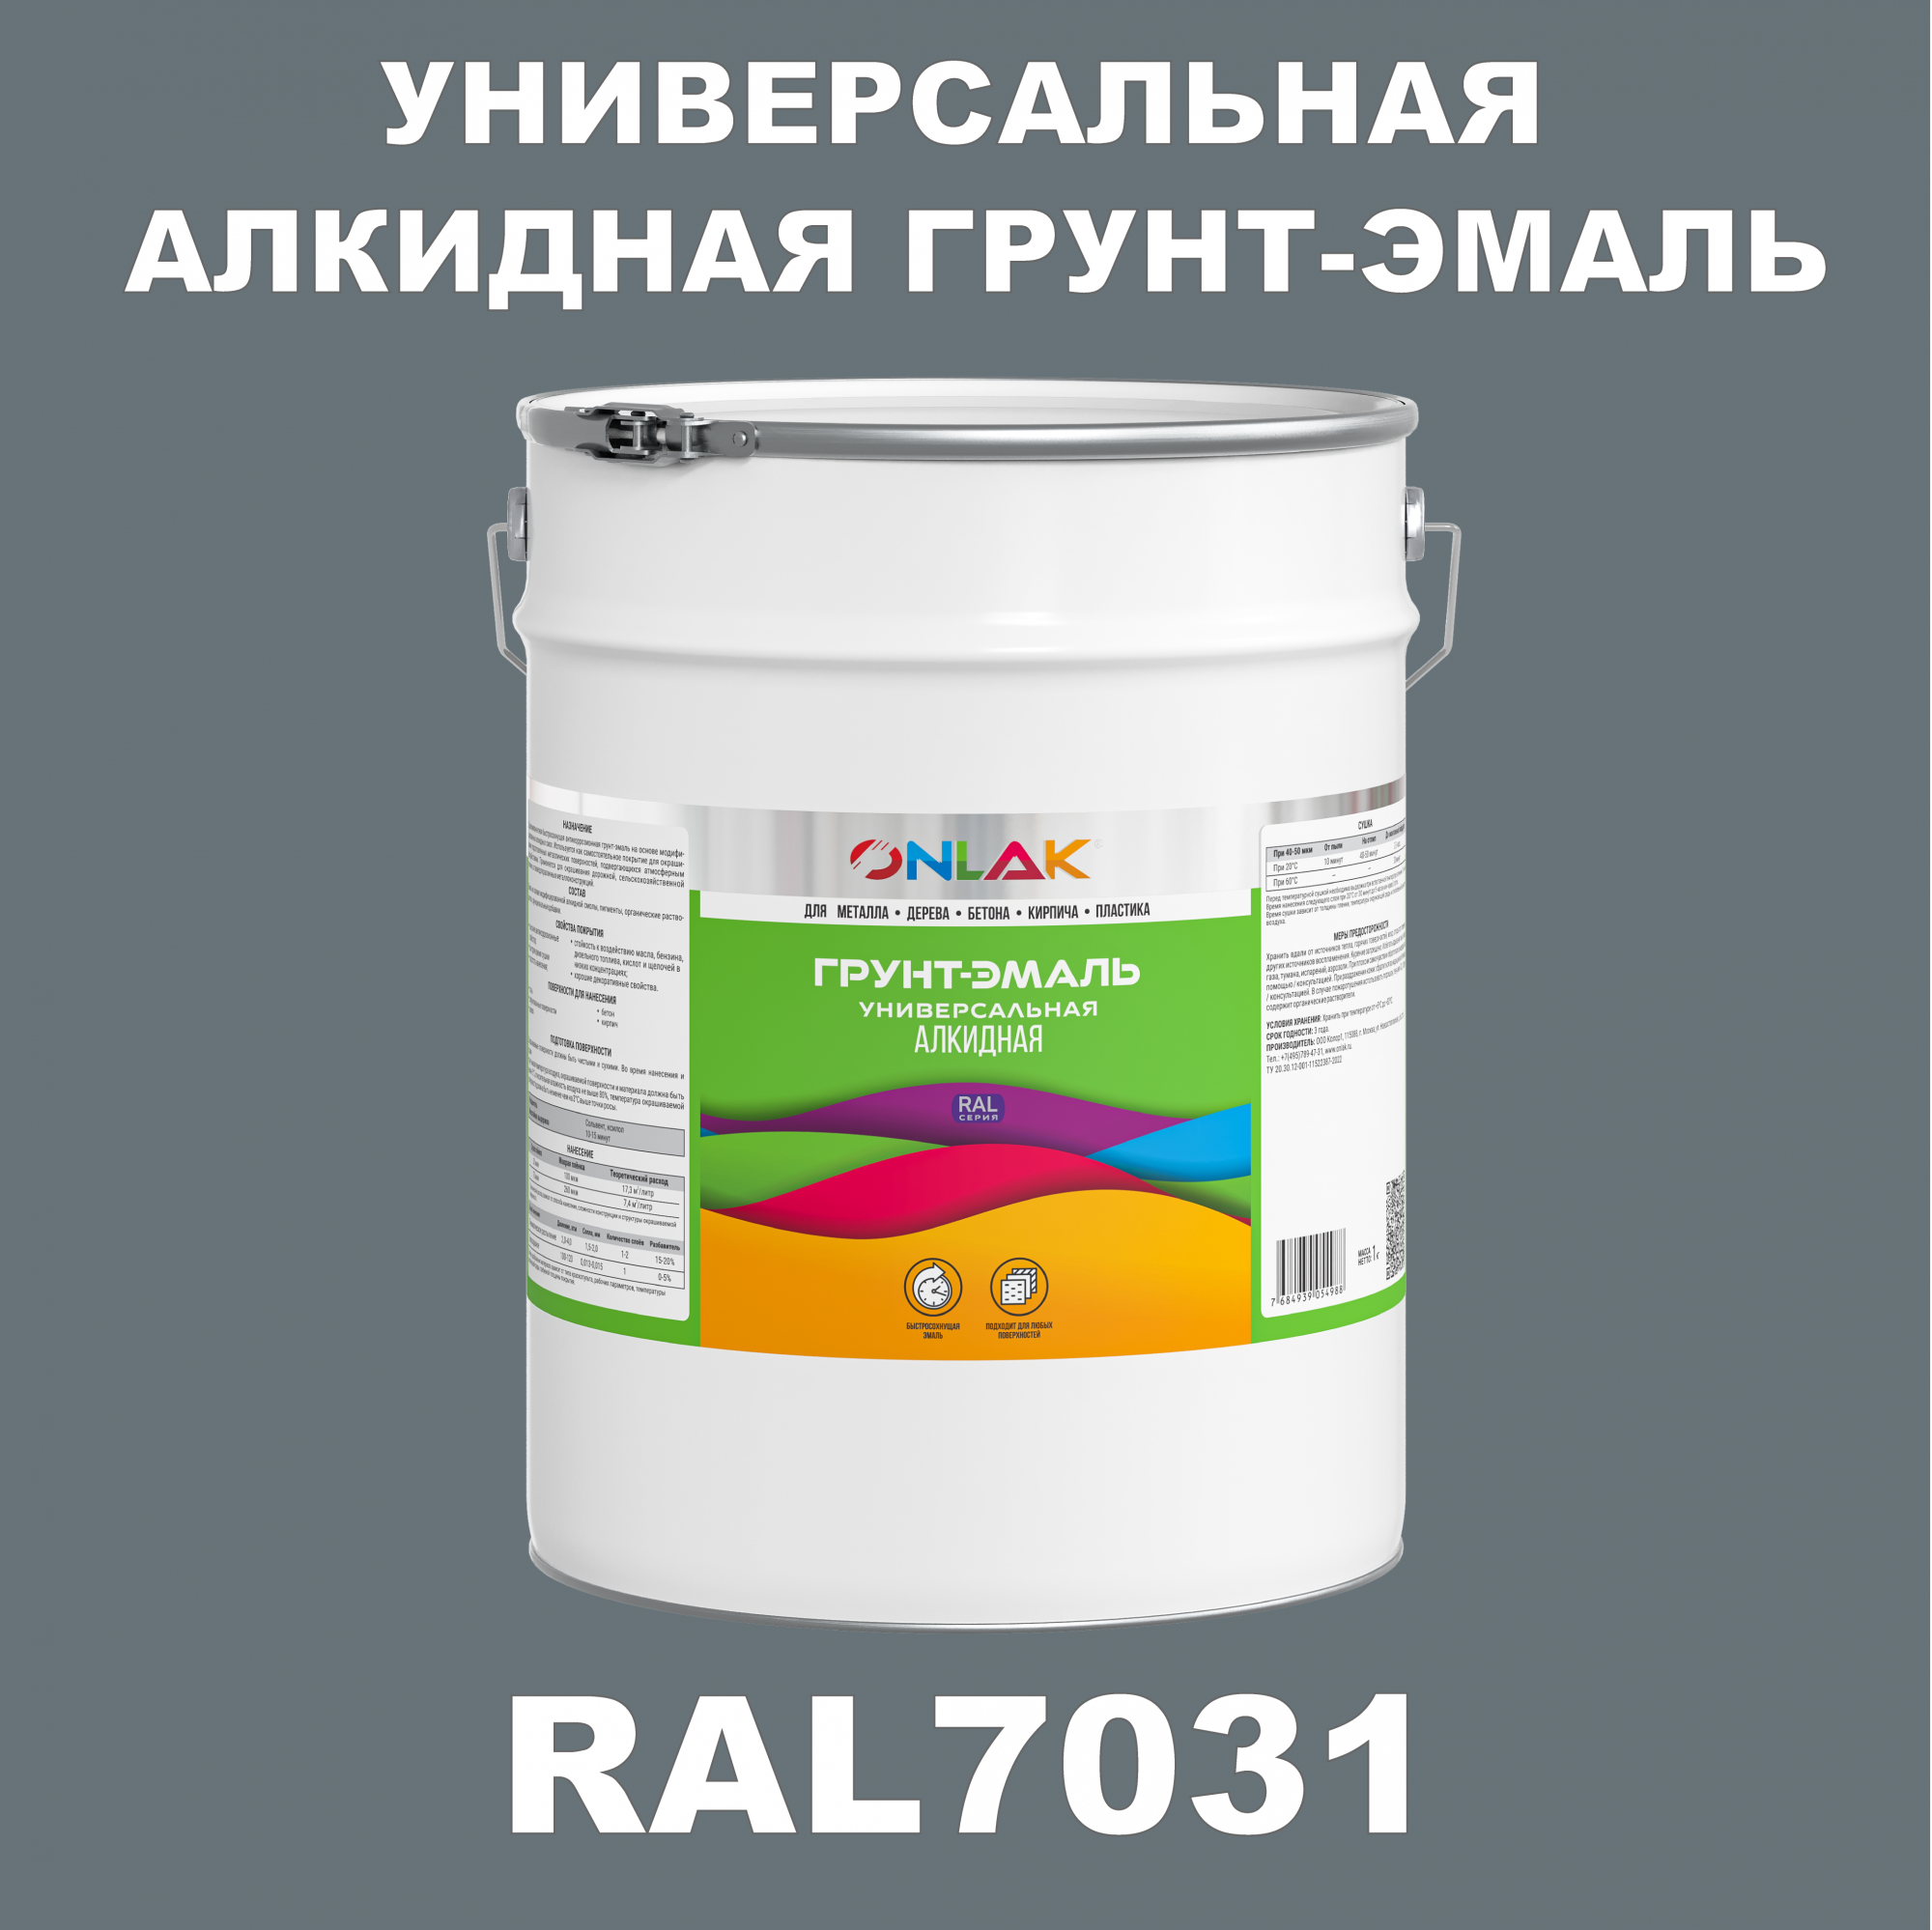 Грунт-эмаль ONLAK 1К RAL7031 антикоррозионная алкидная по металлу по ржавчине 20 кг грунт эмаль yollo по ржавчине алкидная серая 0 9 кг